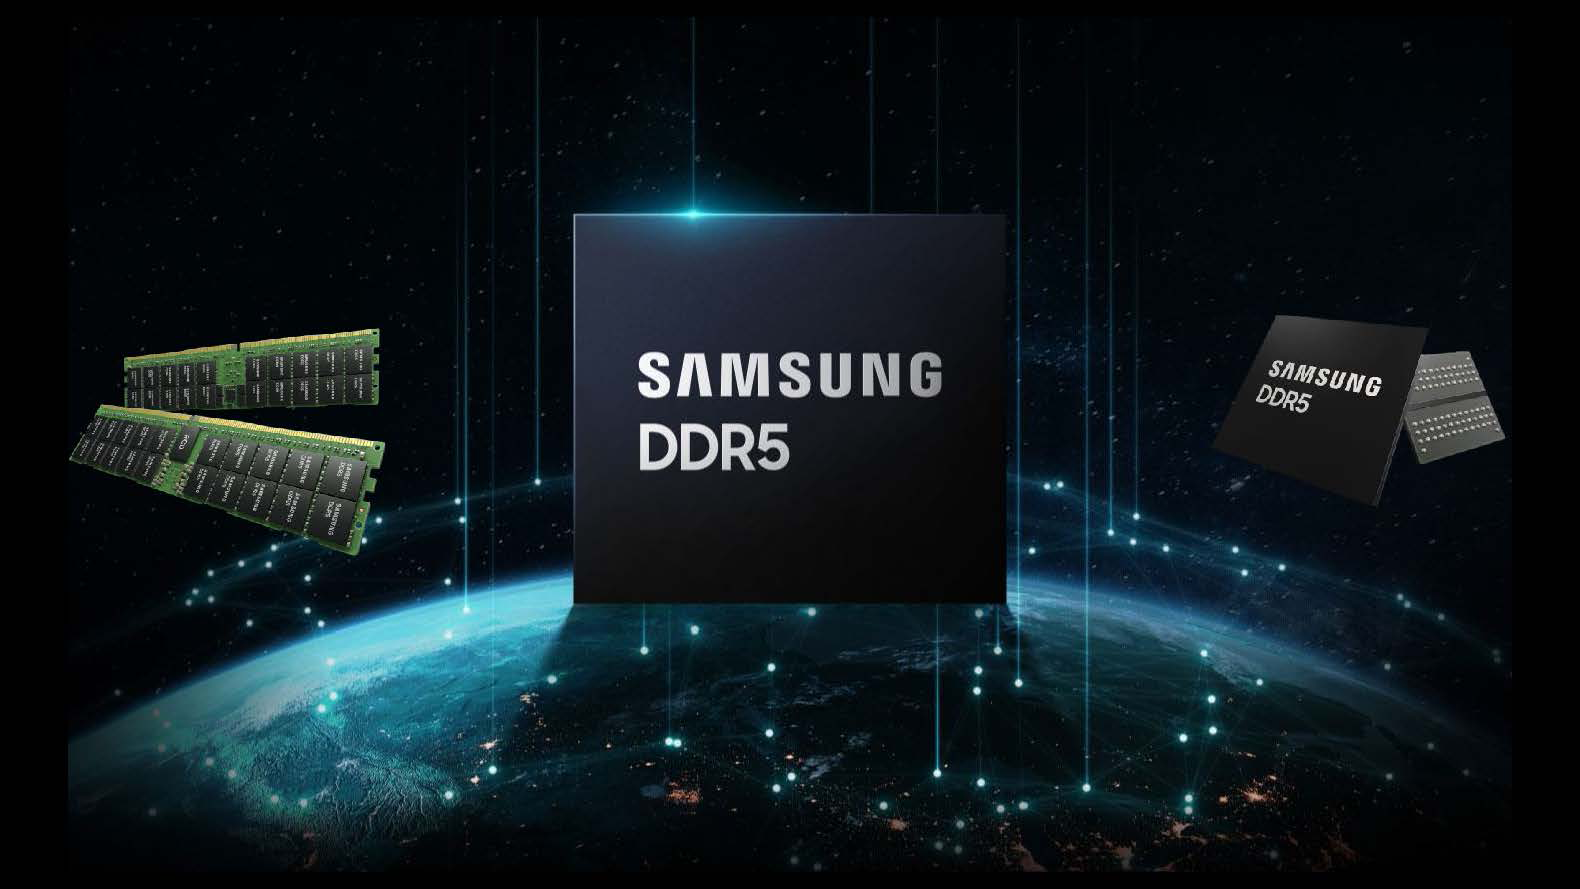 Samsung Ddr5 Presentation